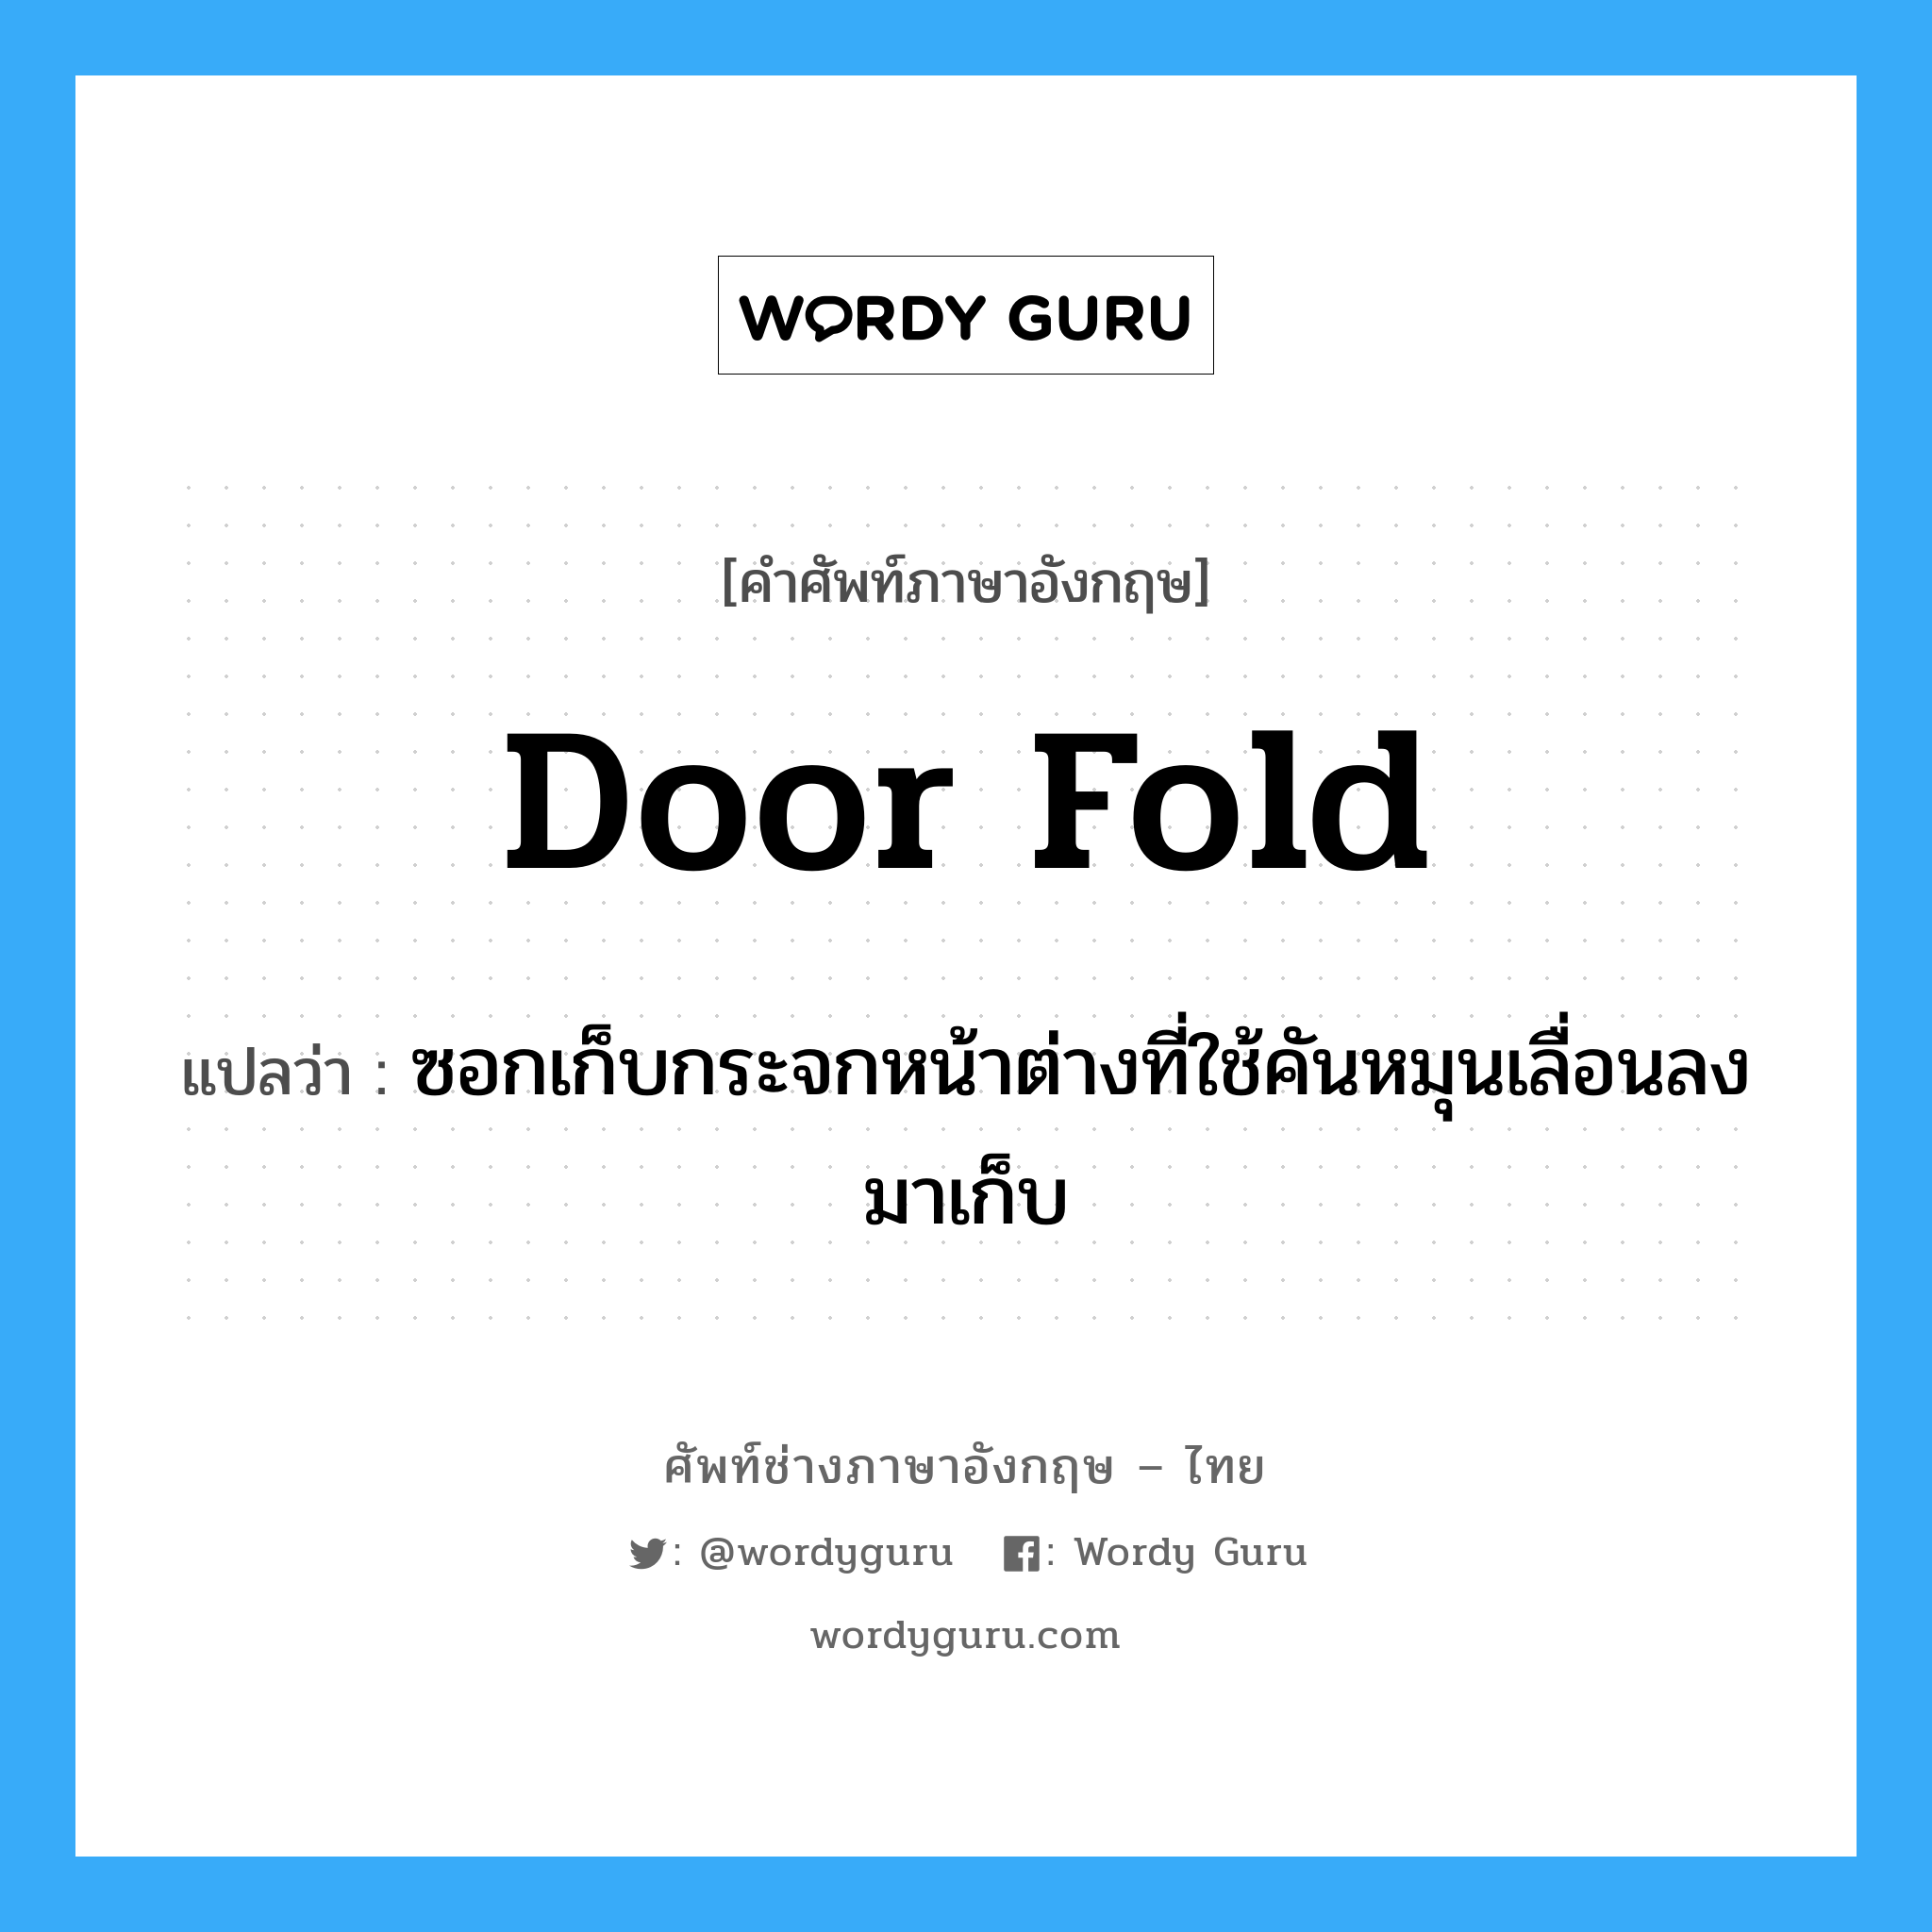 door fold แปลว่า?, คำศัพท์ช่างภาษาอังกฤษ - ไทย door fold คำศัพท์ภาษาอังกฤษ door fold แปลว่า ซอกเก็บกระจกหน้าต่างที่ใช้คันหมุนเลื่อนลงมาเก็บ